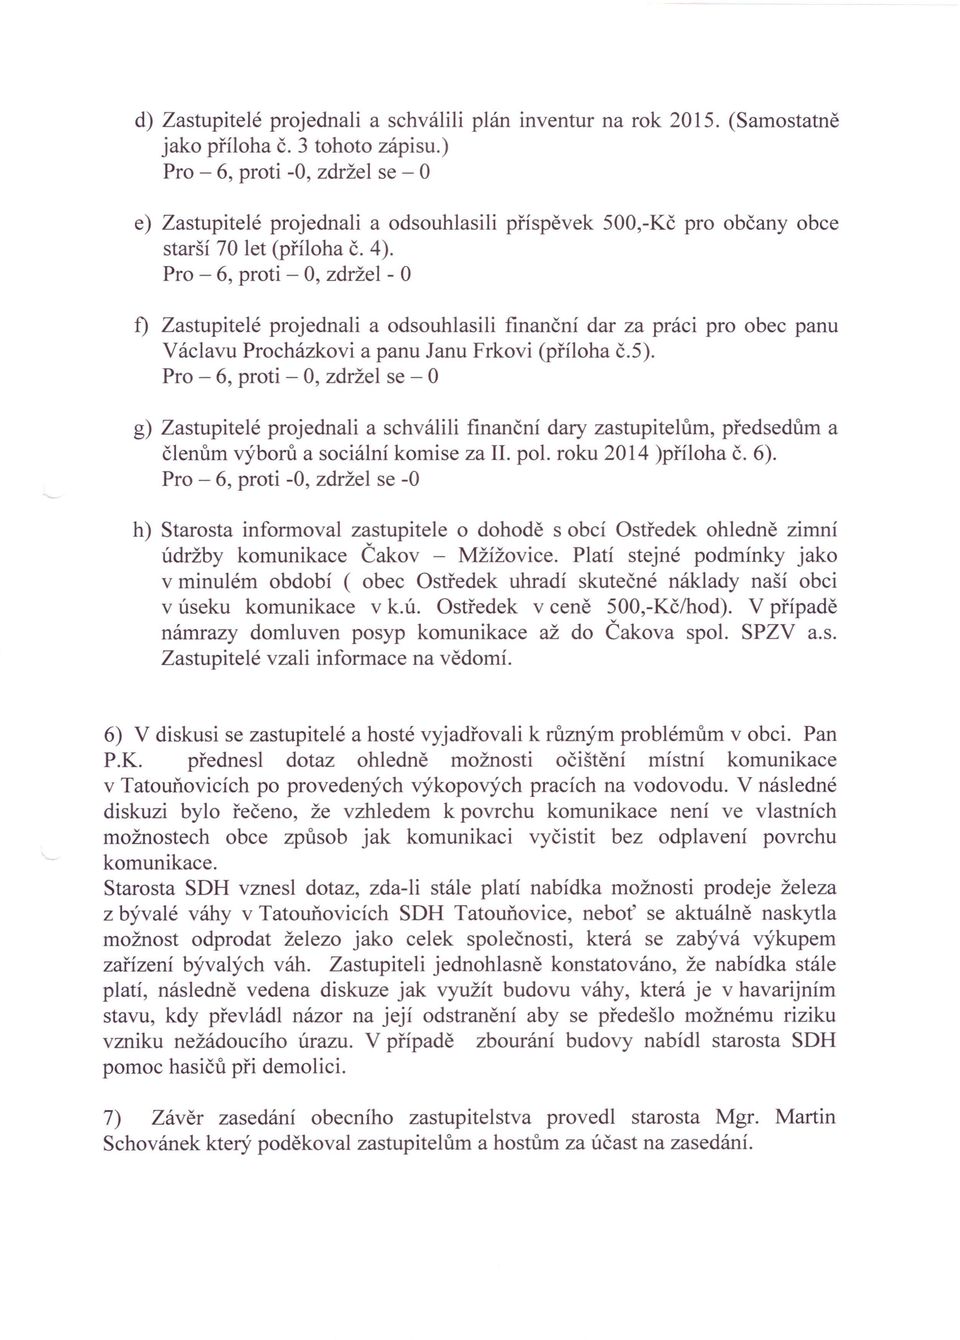 Pro - 6, proti - 0, zdržel - f) Zastupitelé projednali a odsouhlasili finanční dar za práci pro obec panu Václavu Procházkovi a panu Janu Frkovi (příloha č.5).